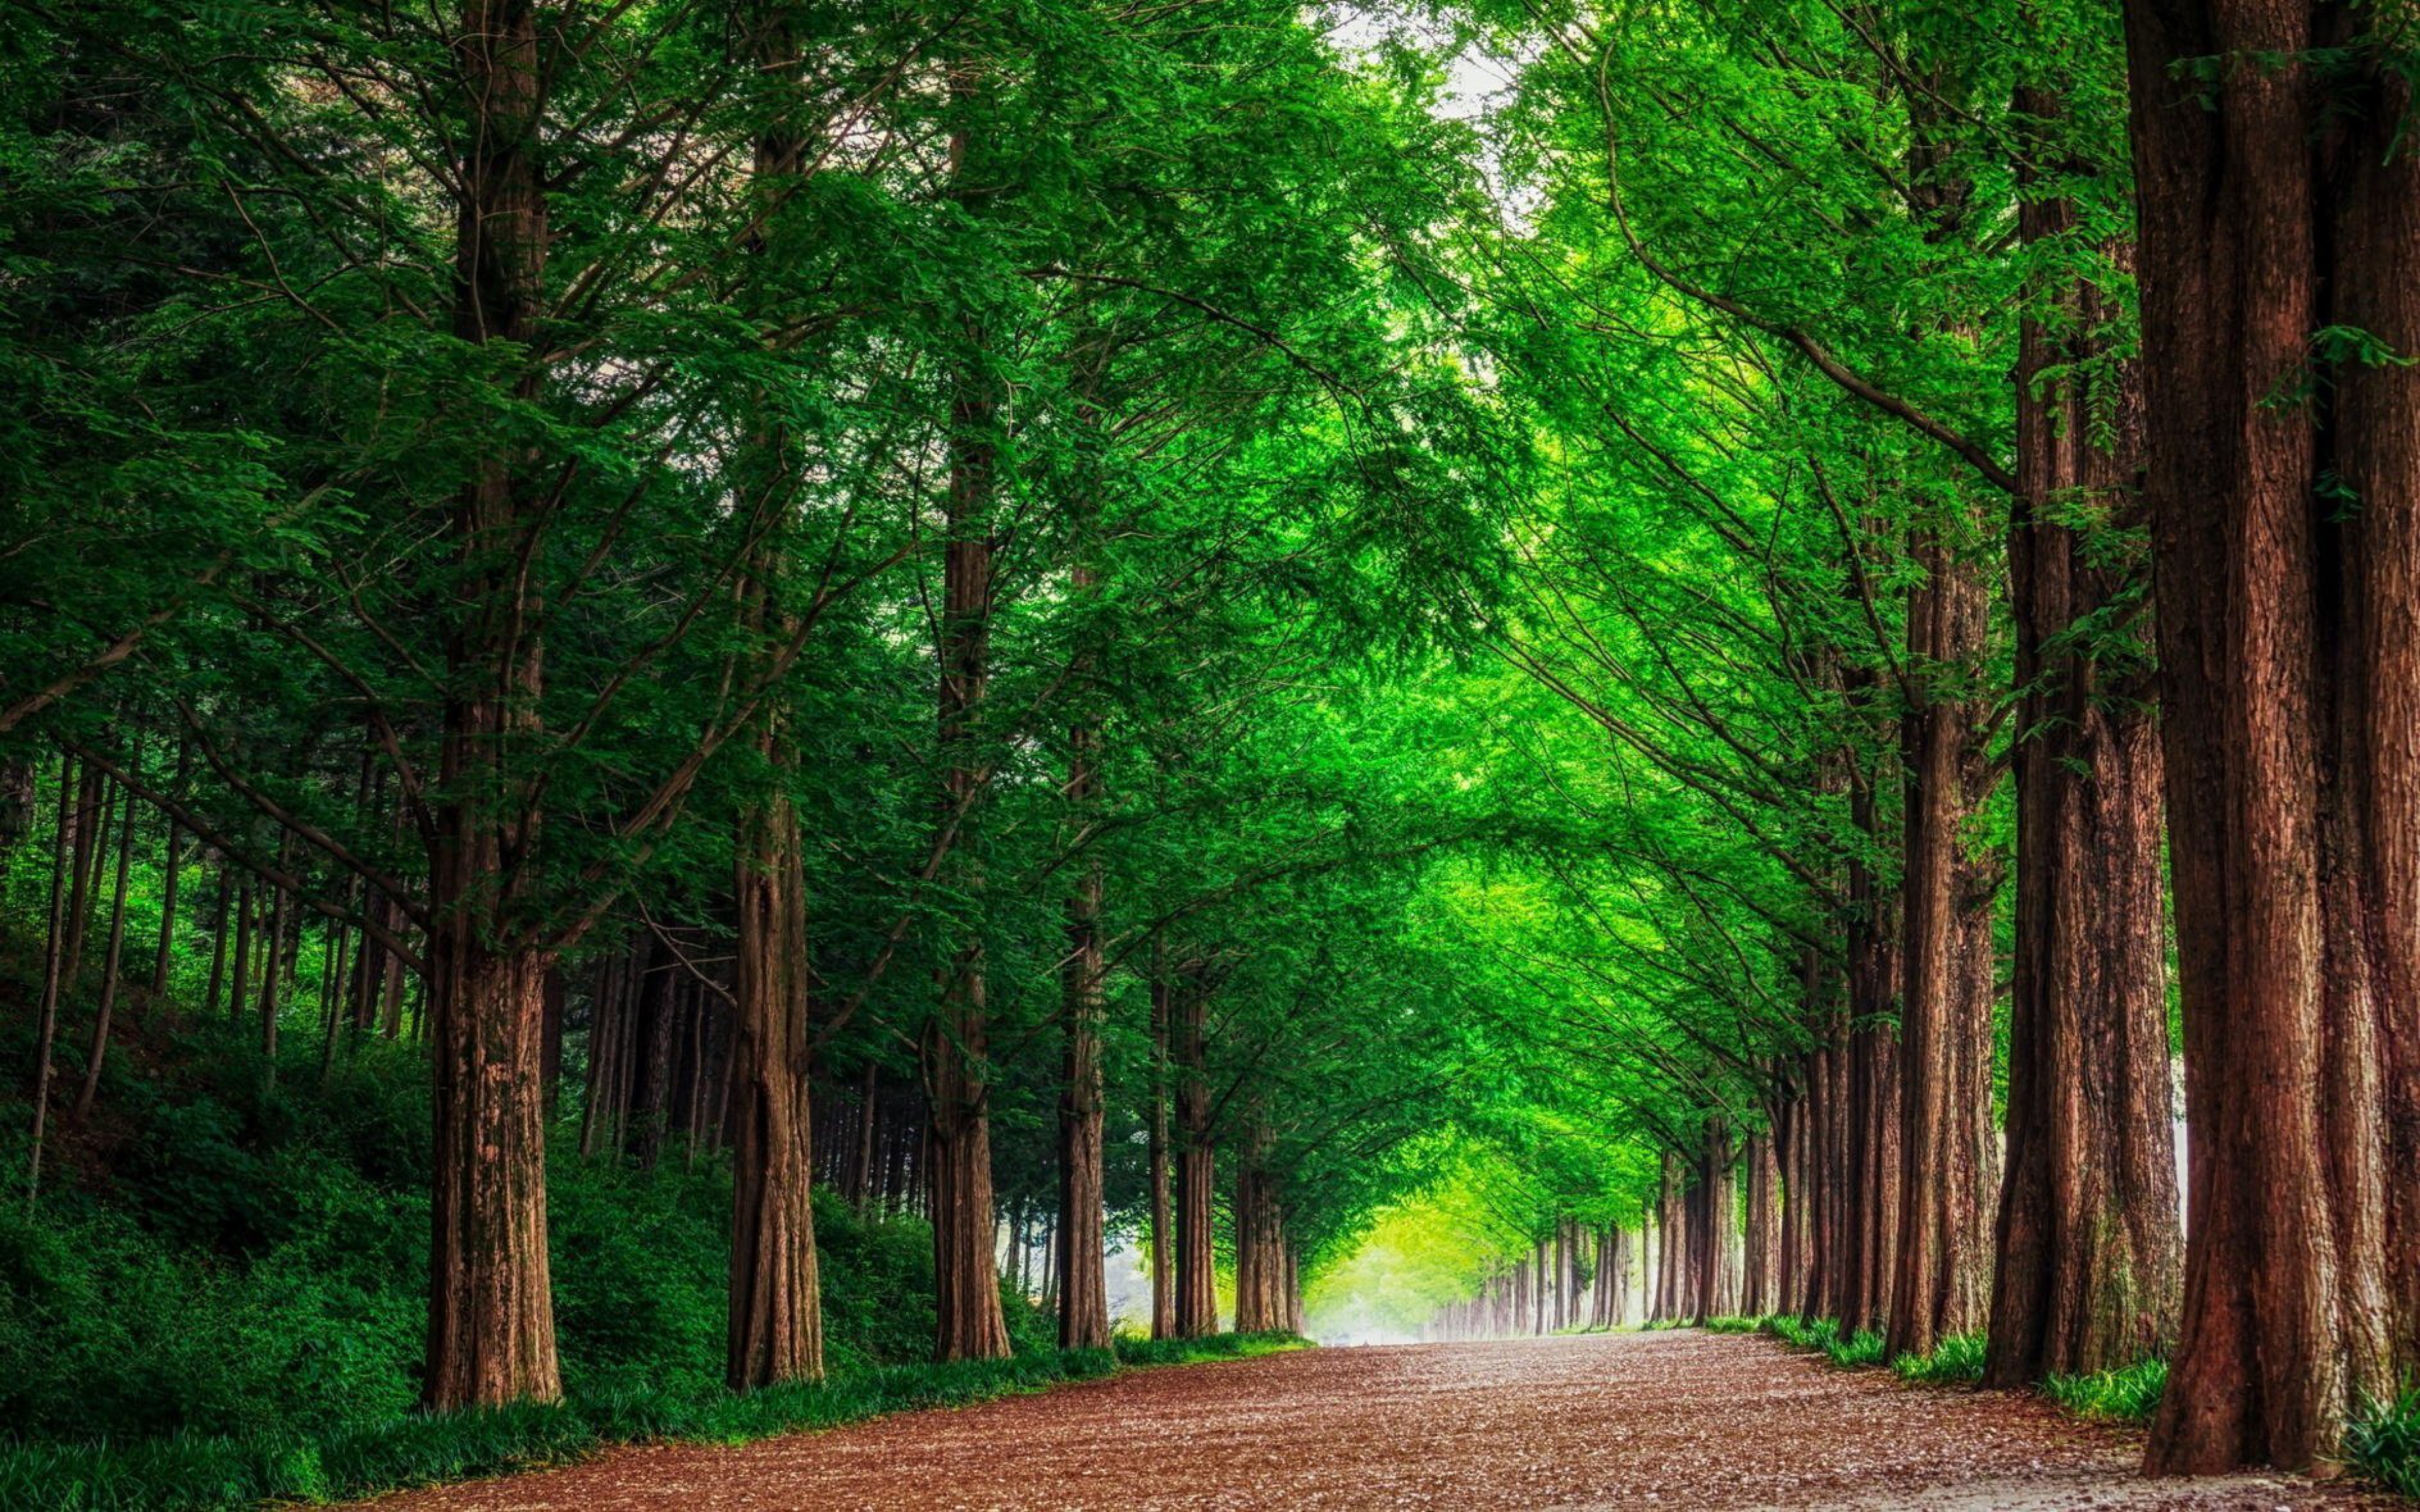 Trong hình ảnh này, cây xanh rực rỡ trên nền đường đất nâu, tạo nên một bức tranh thiên nhiên đẹp tuyệt vời. Wallpaper cây xanh này sẽ mang đến cho bạn một niềm vui và sự thanh thản không thể cưỡng lại. Hãy cùng tận hưởng sự yên tĩnh và sự đẹp đẽ của thiên nhiên.